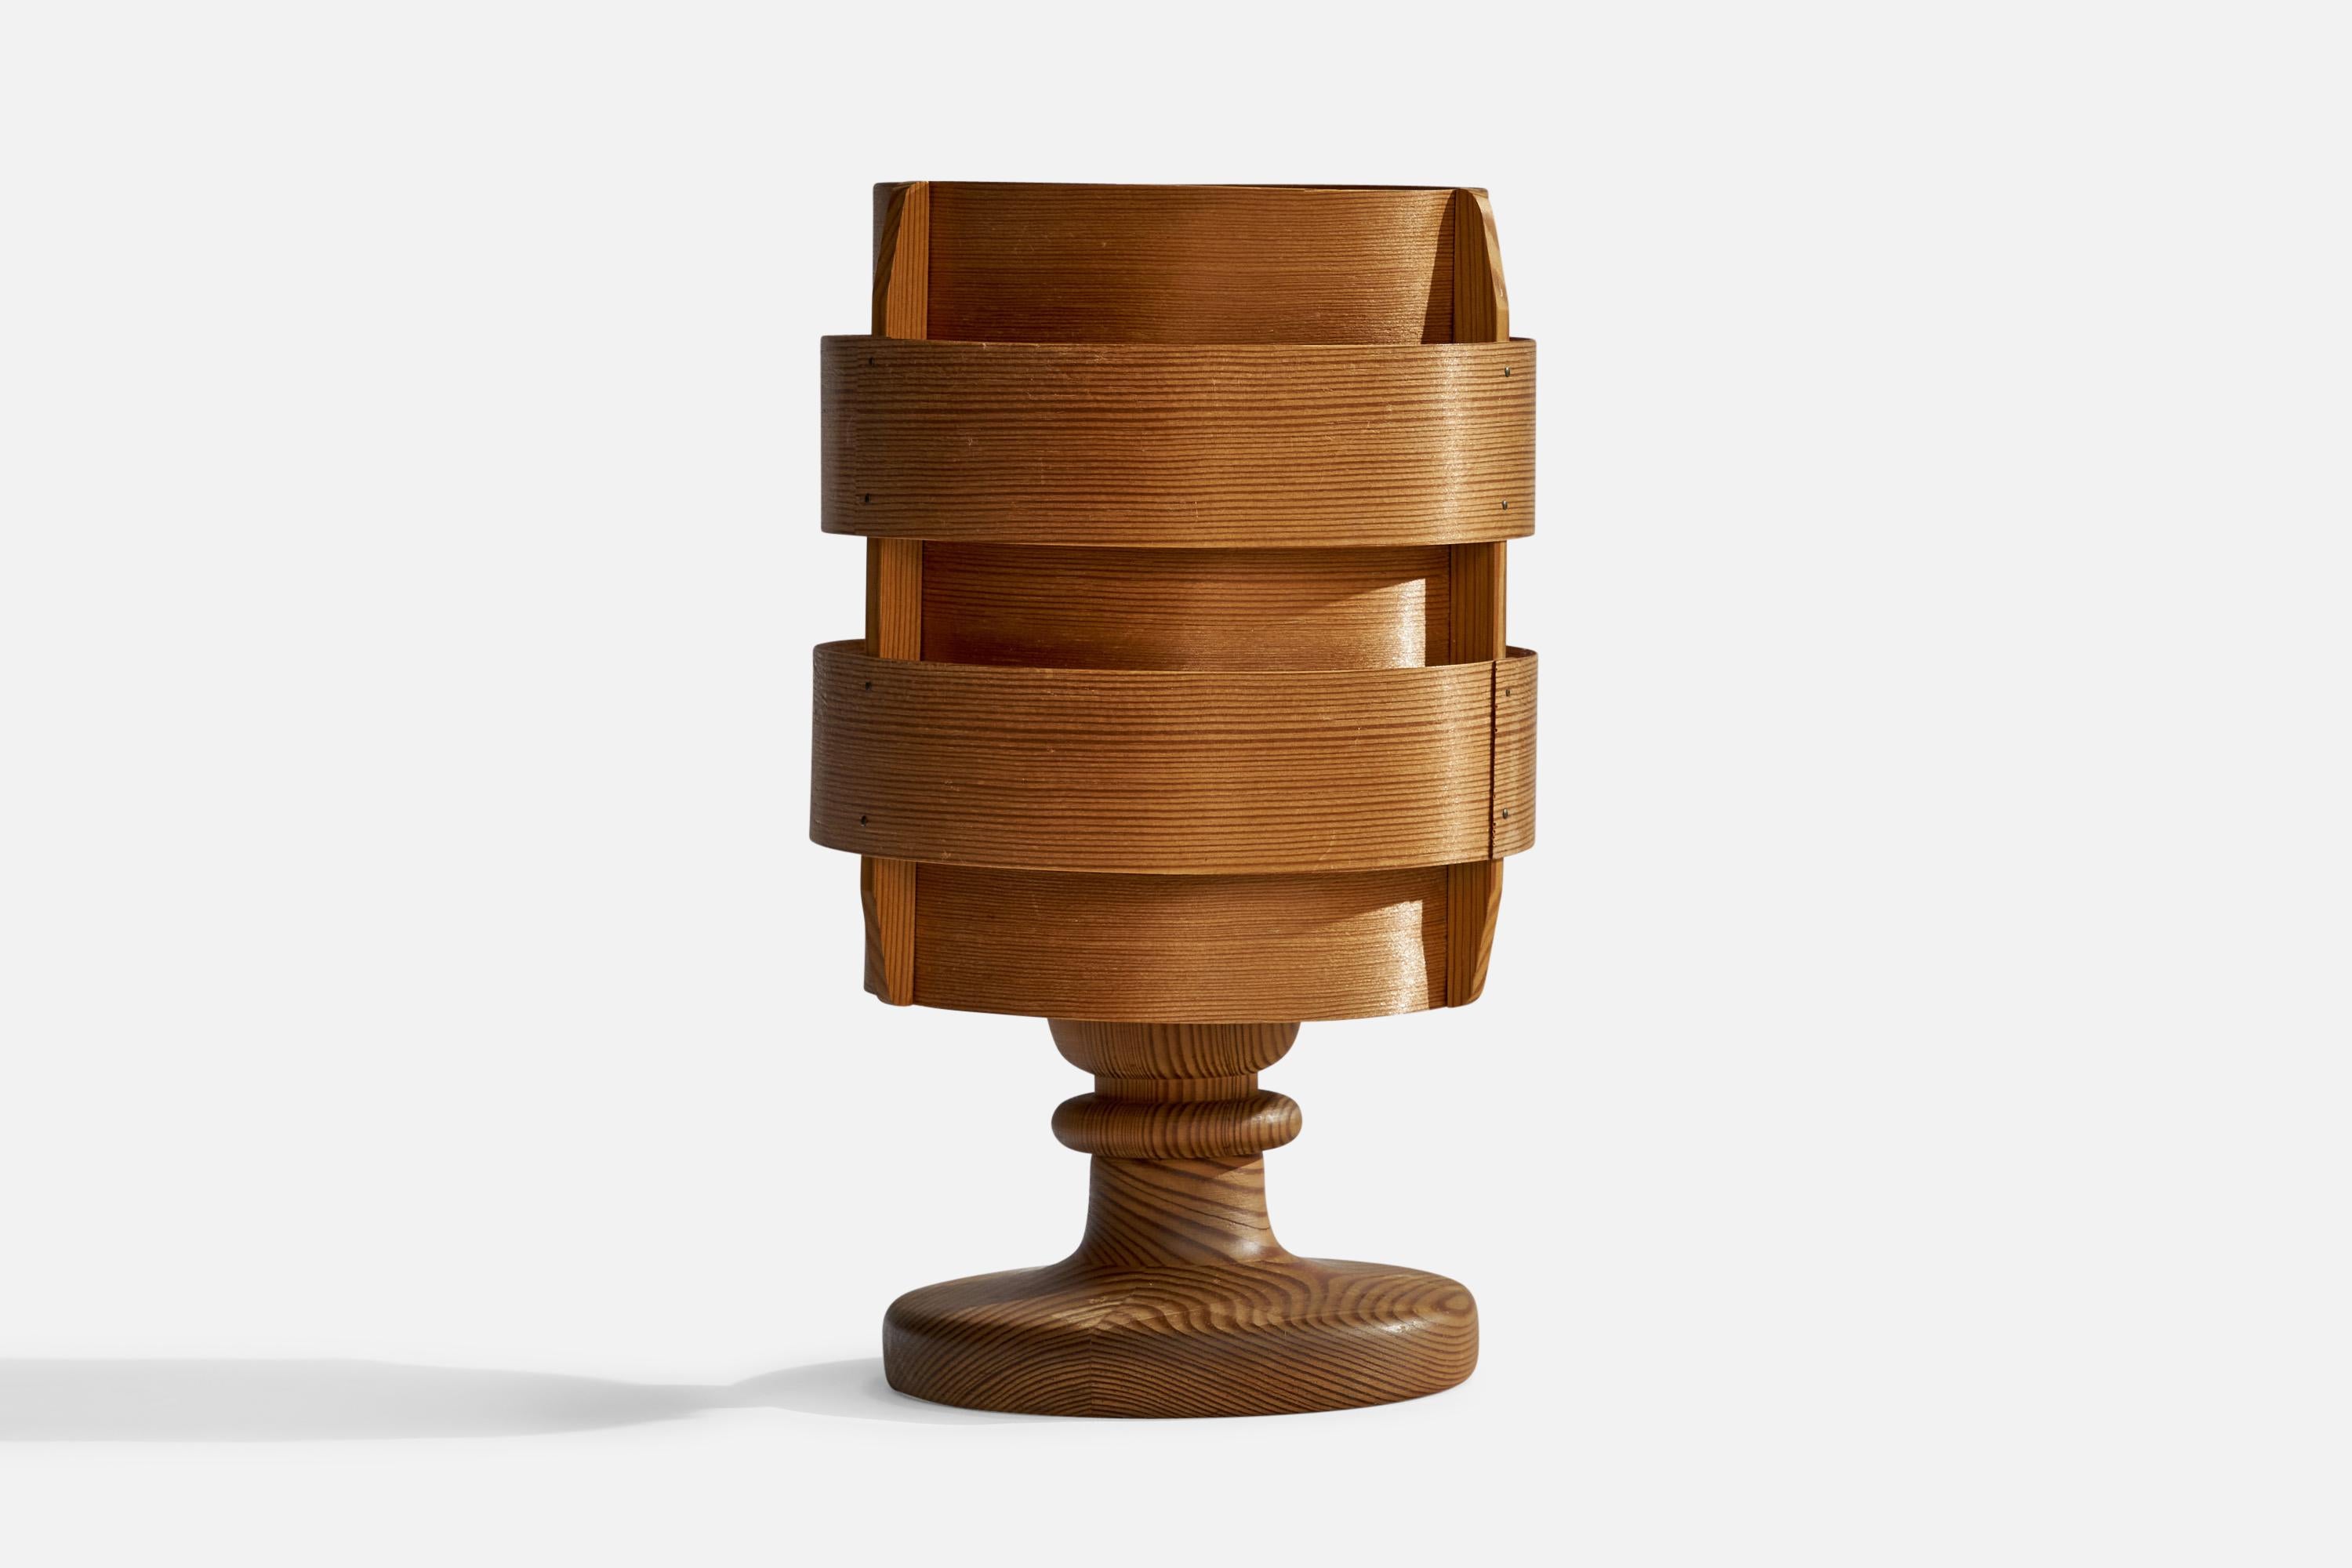 Lampe de table en pin et placage de pin moulé, conçue par Hans-Agne Jakobsson et produite par Agnes, Suède, années 1970.

Dimensions globales (pouces) : 10